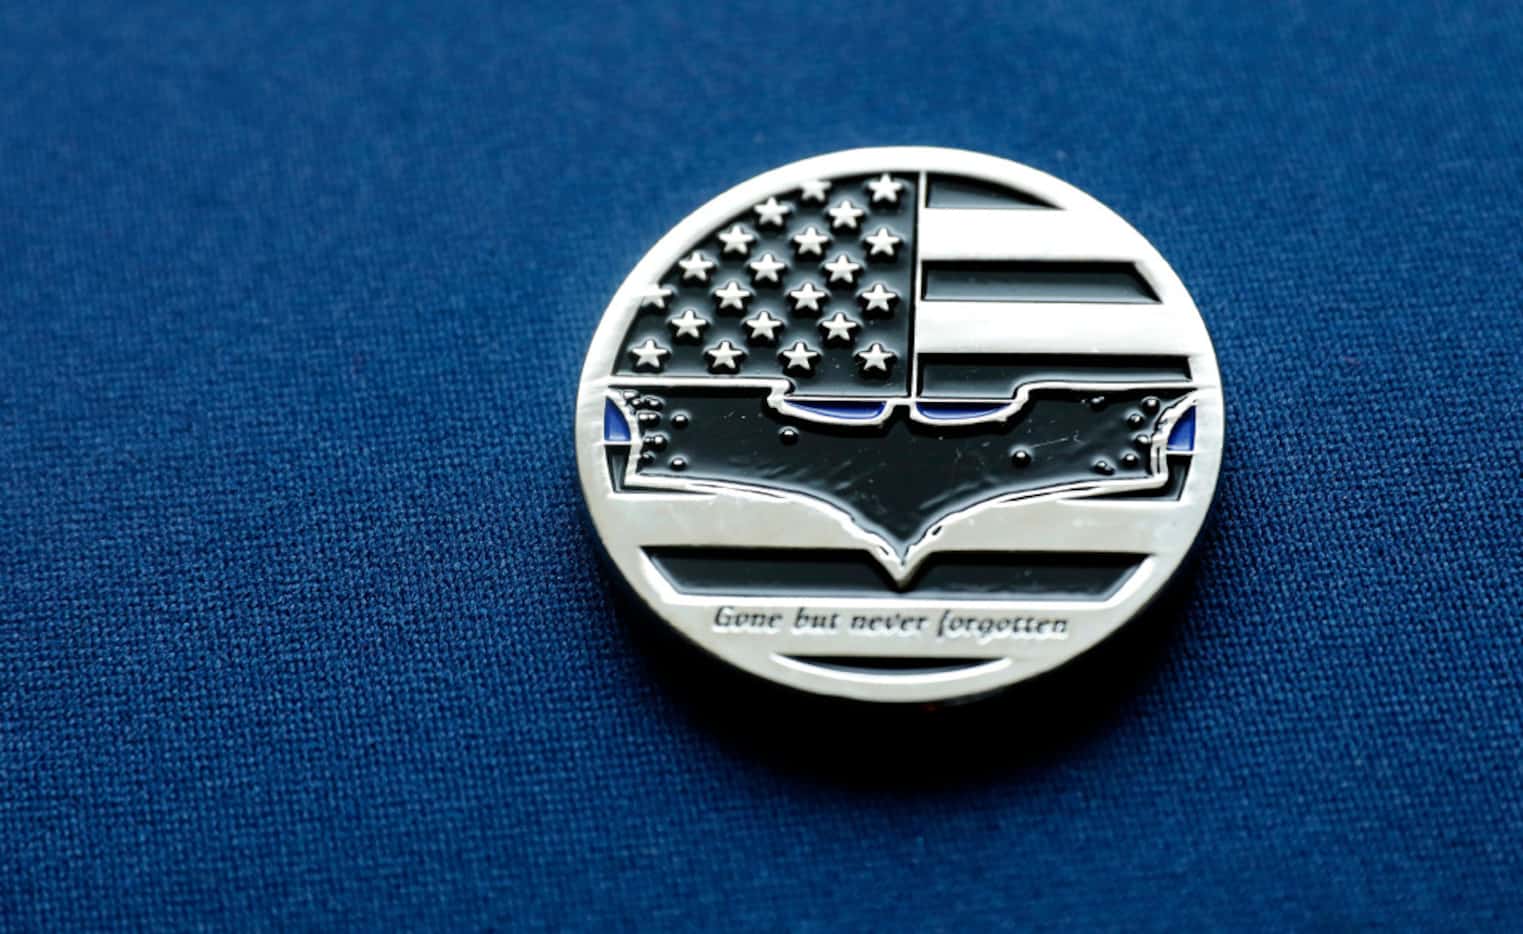 DART Officer Joseph Kyser carries a challenge medal depicting the Batman logo after fallen...